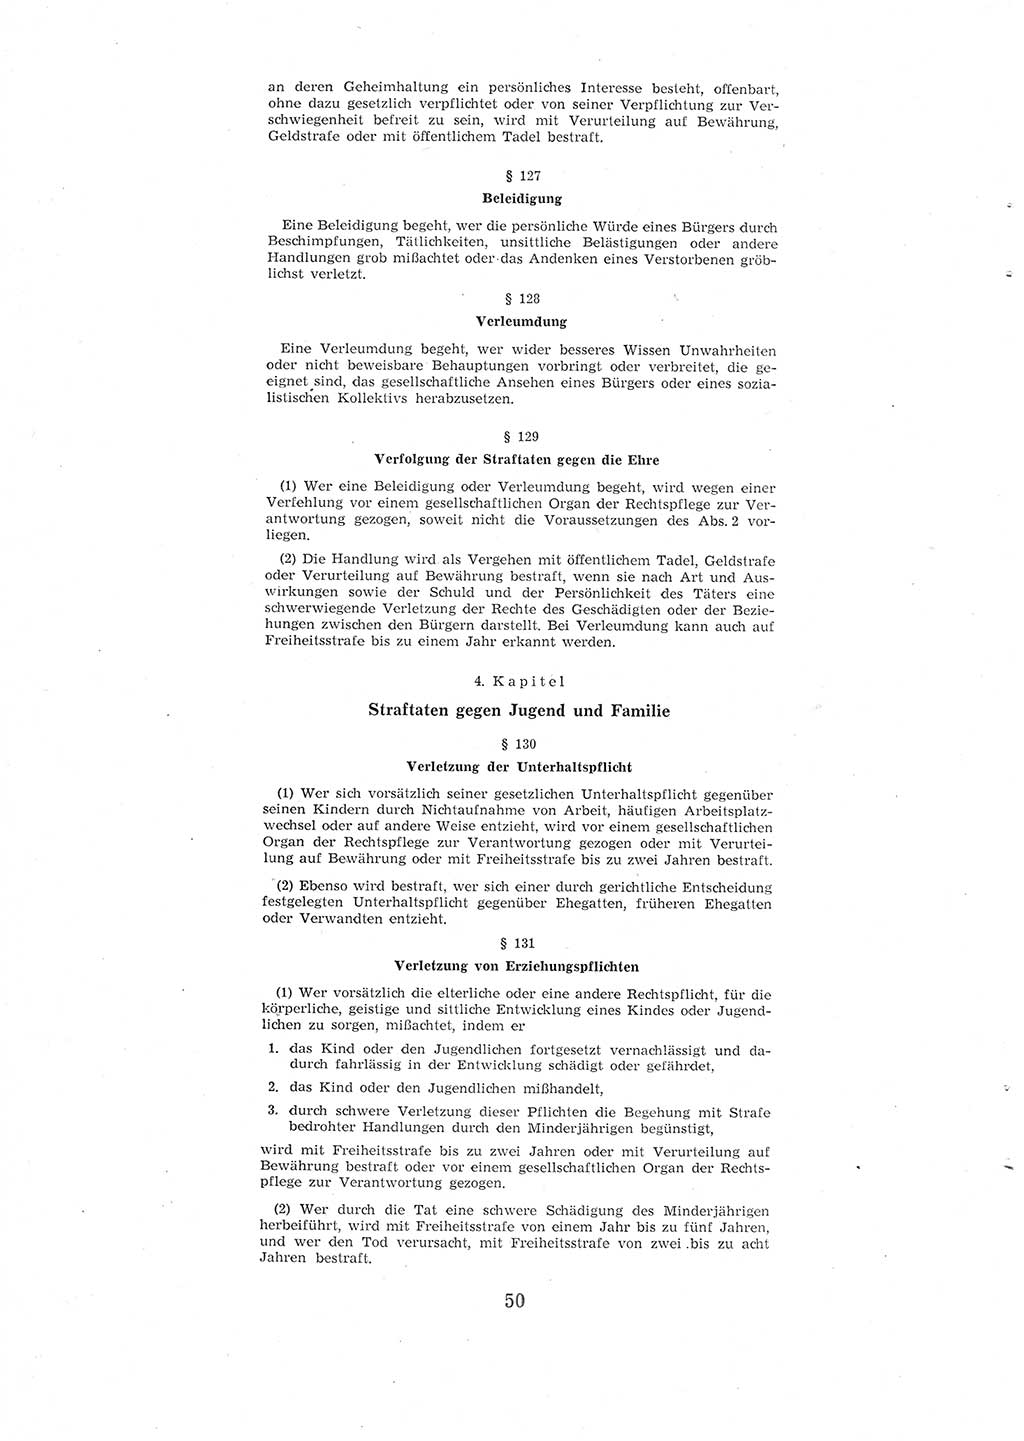 Entwurf des Strafgesetzbuches (StGB) der Deutschen Demokratischen Republik (DDR) 1967, Seite 50 (Entw. StGB DDR 1967, S. 50)